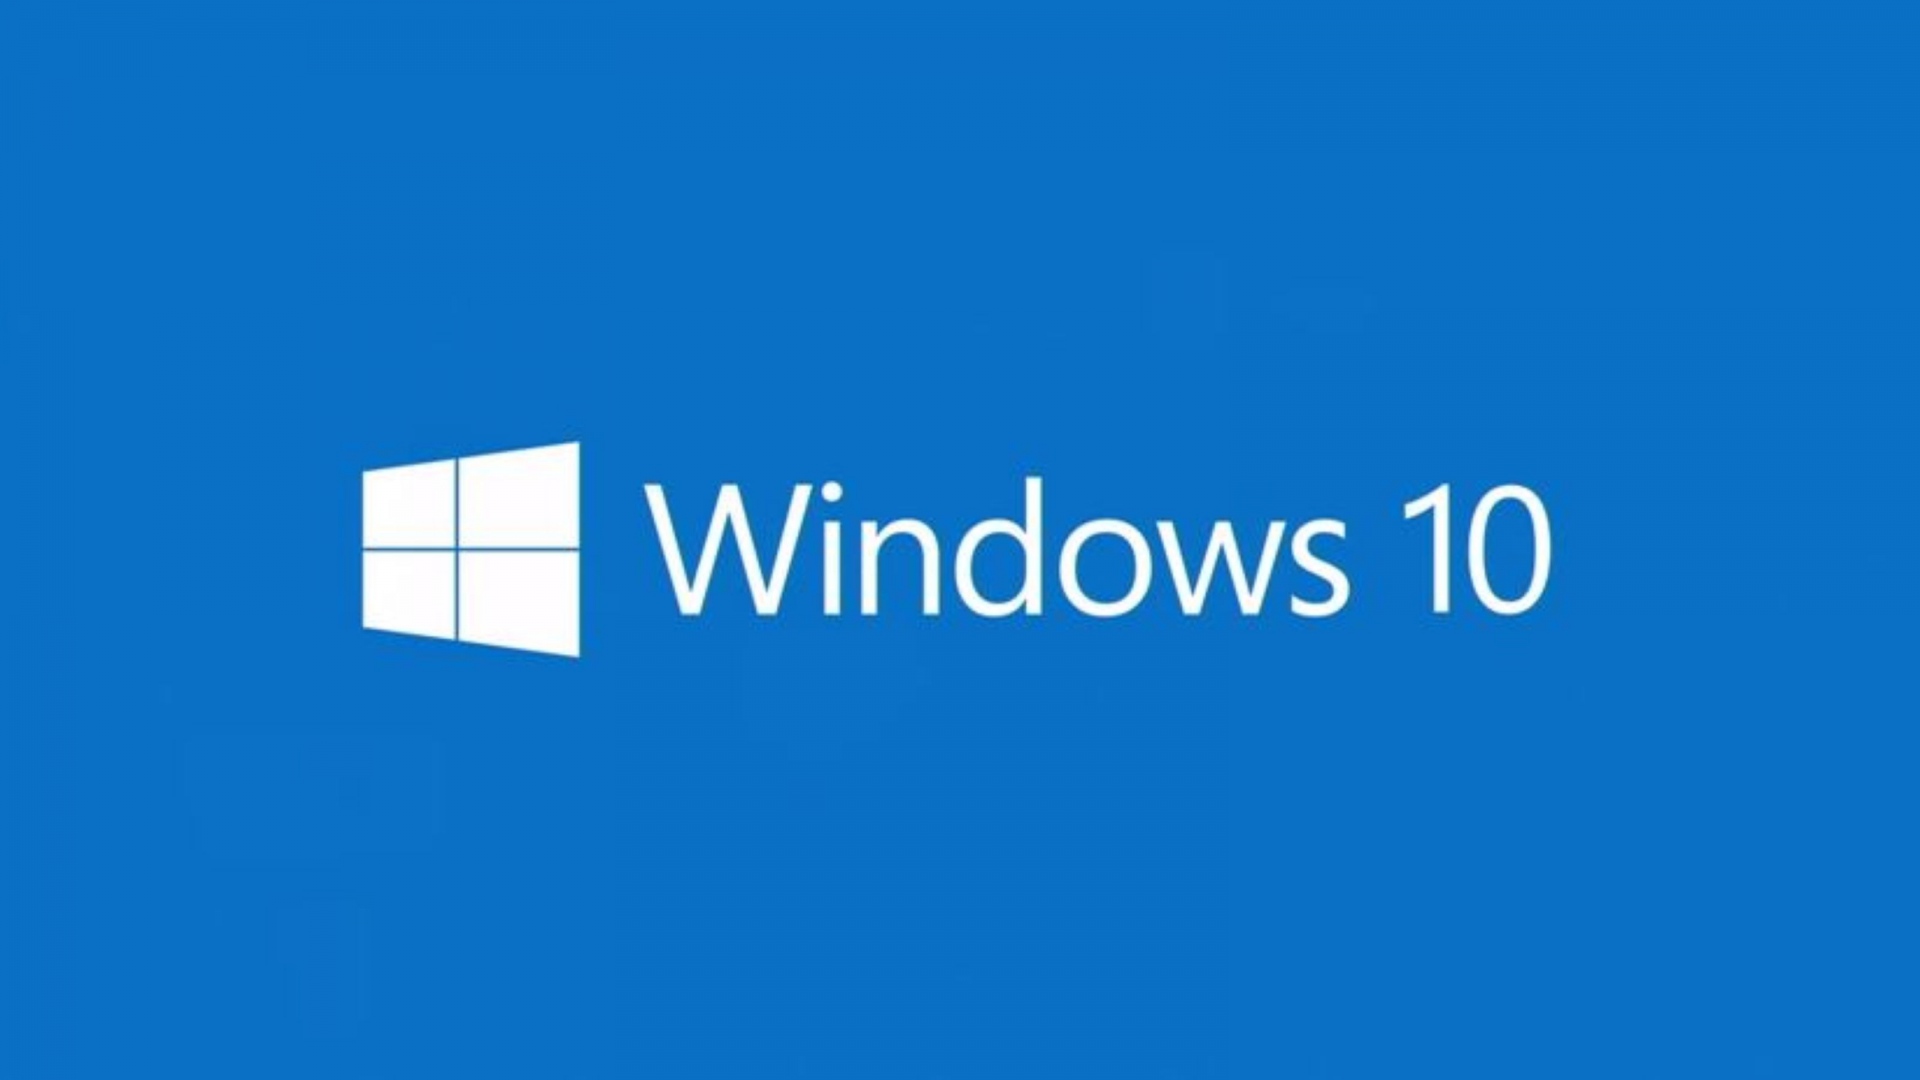 Windows10_1920x1080.jpg